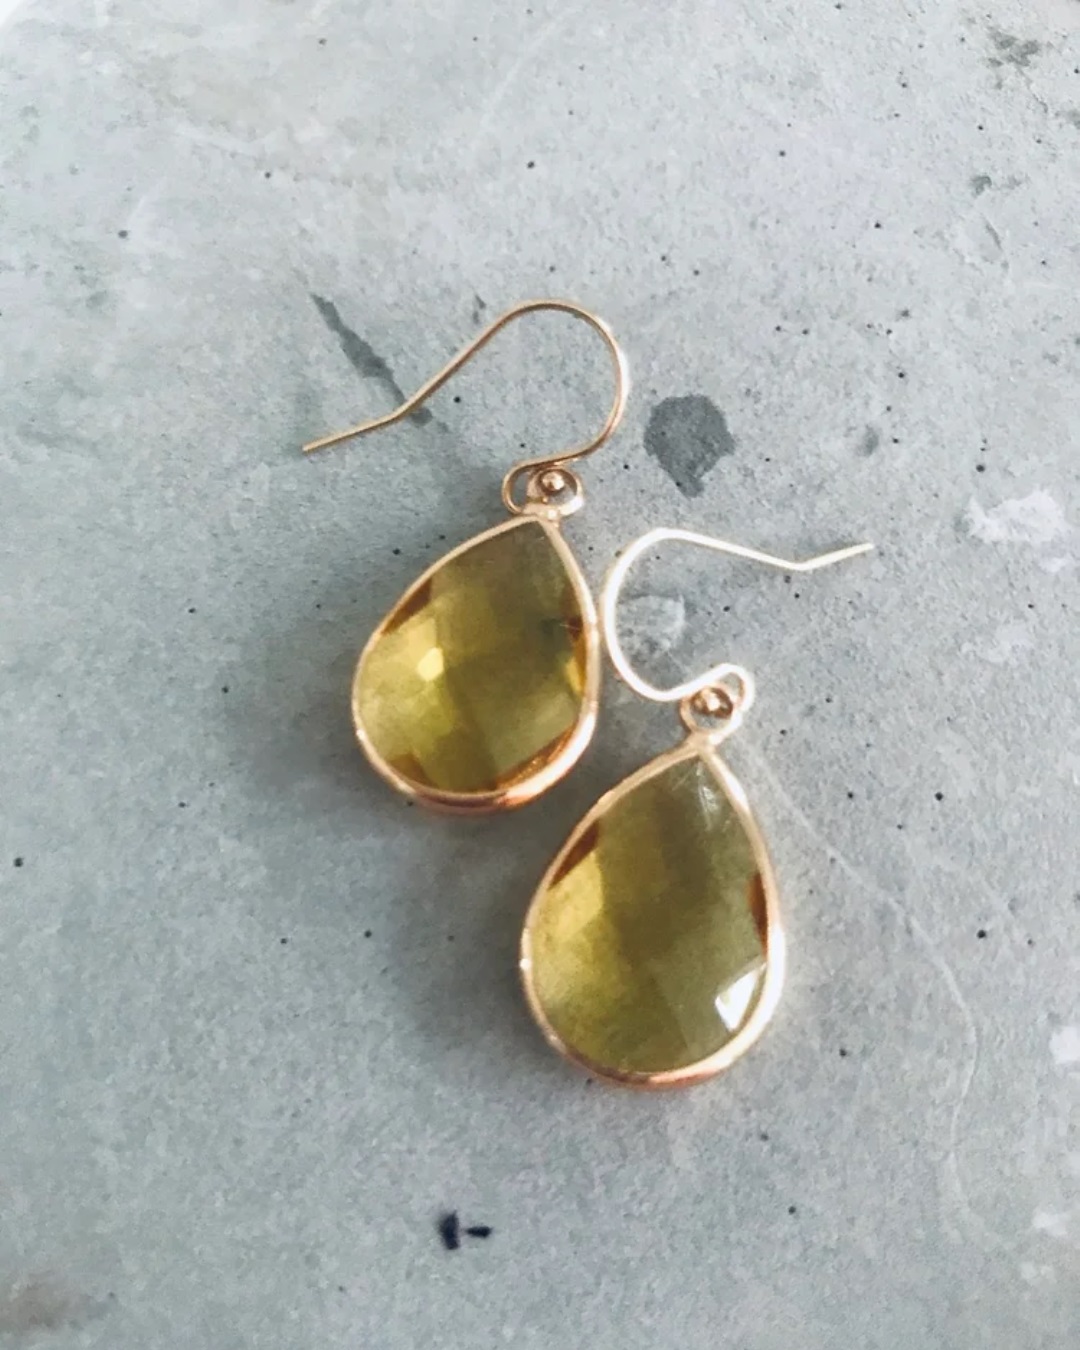 Amber gem drop earrings on grey stone